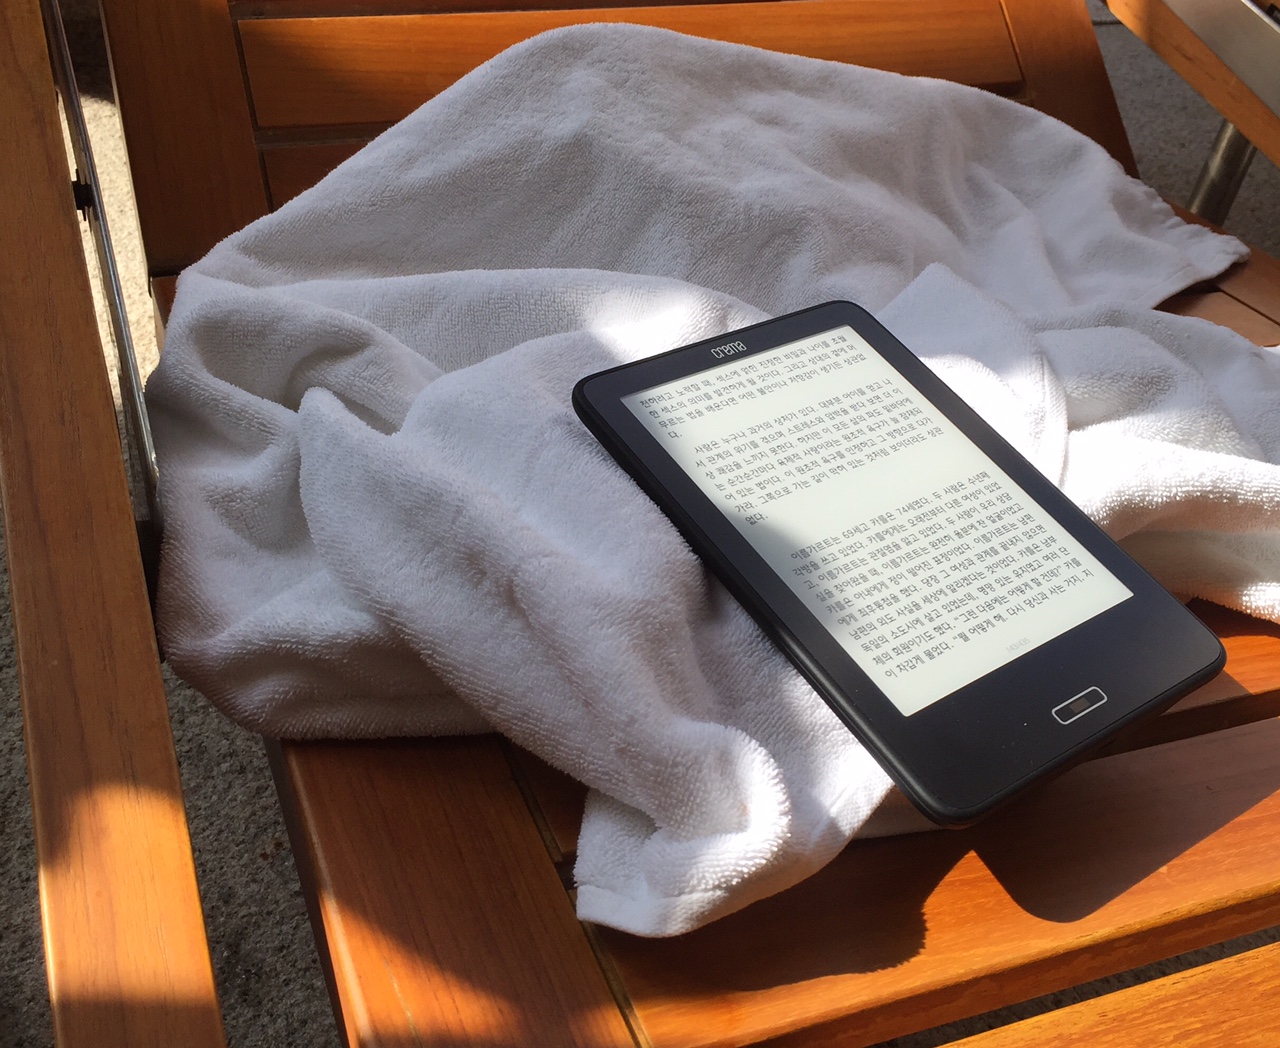 전자책 단말기는 태블릿 대비 불편한 점이 있지만 독서의 즐거움을 더해주는 묘한 기기다.